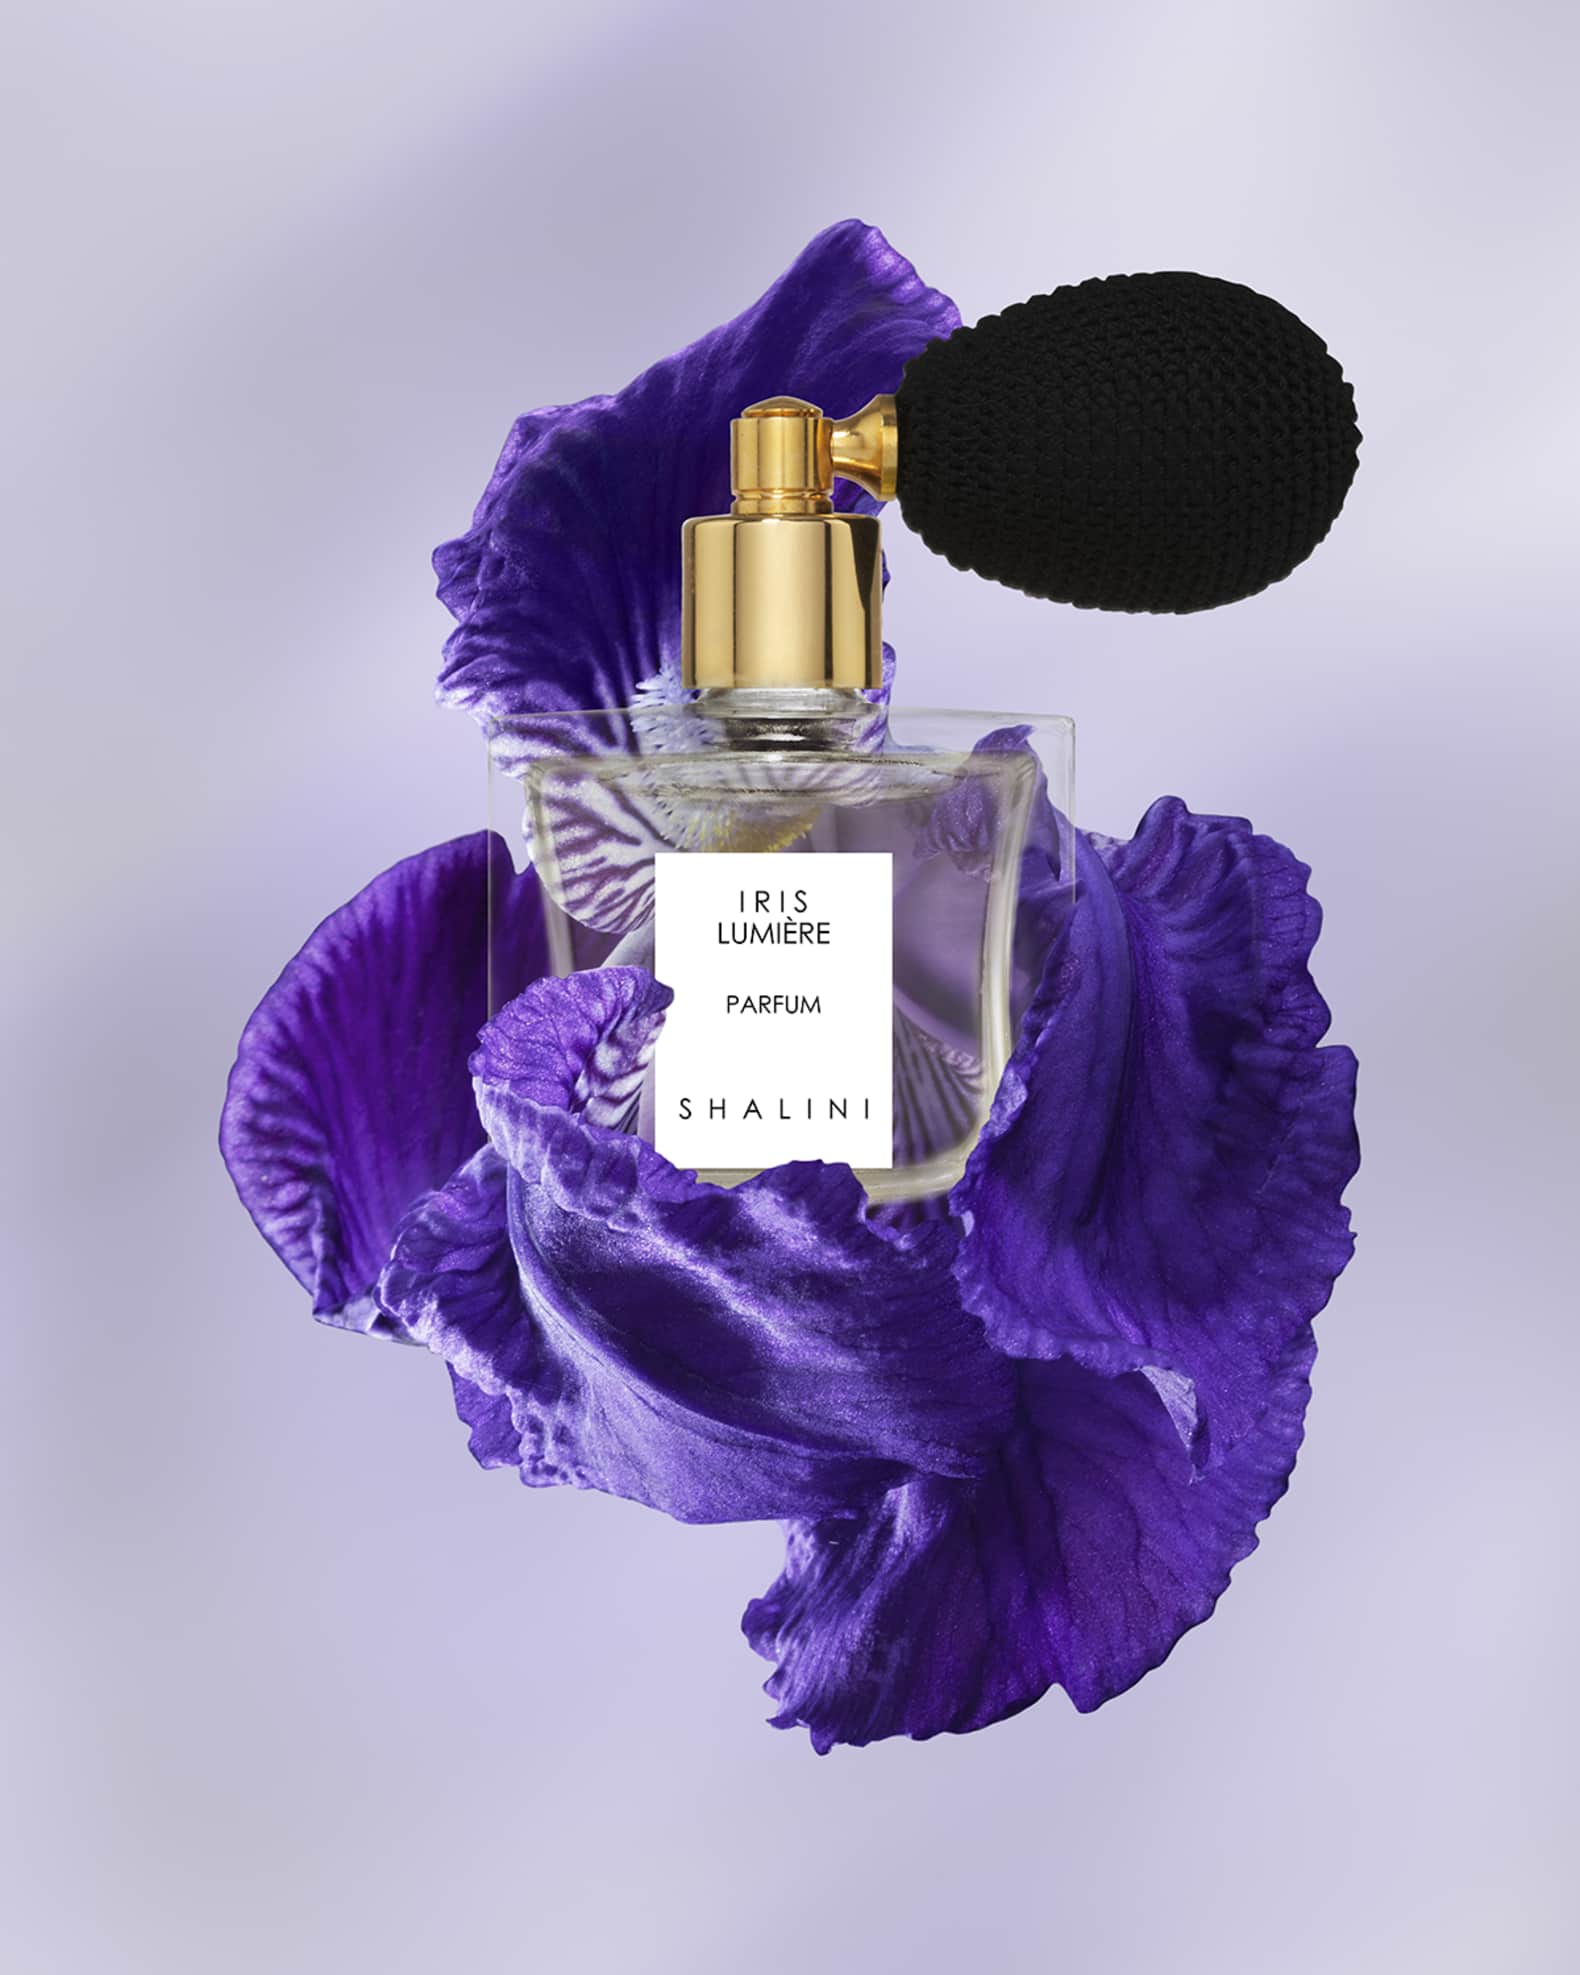 Shalini Parfum 1.7 oz. Iris Lumiere Parfum in Cubique Glass Bottle w ...